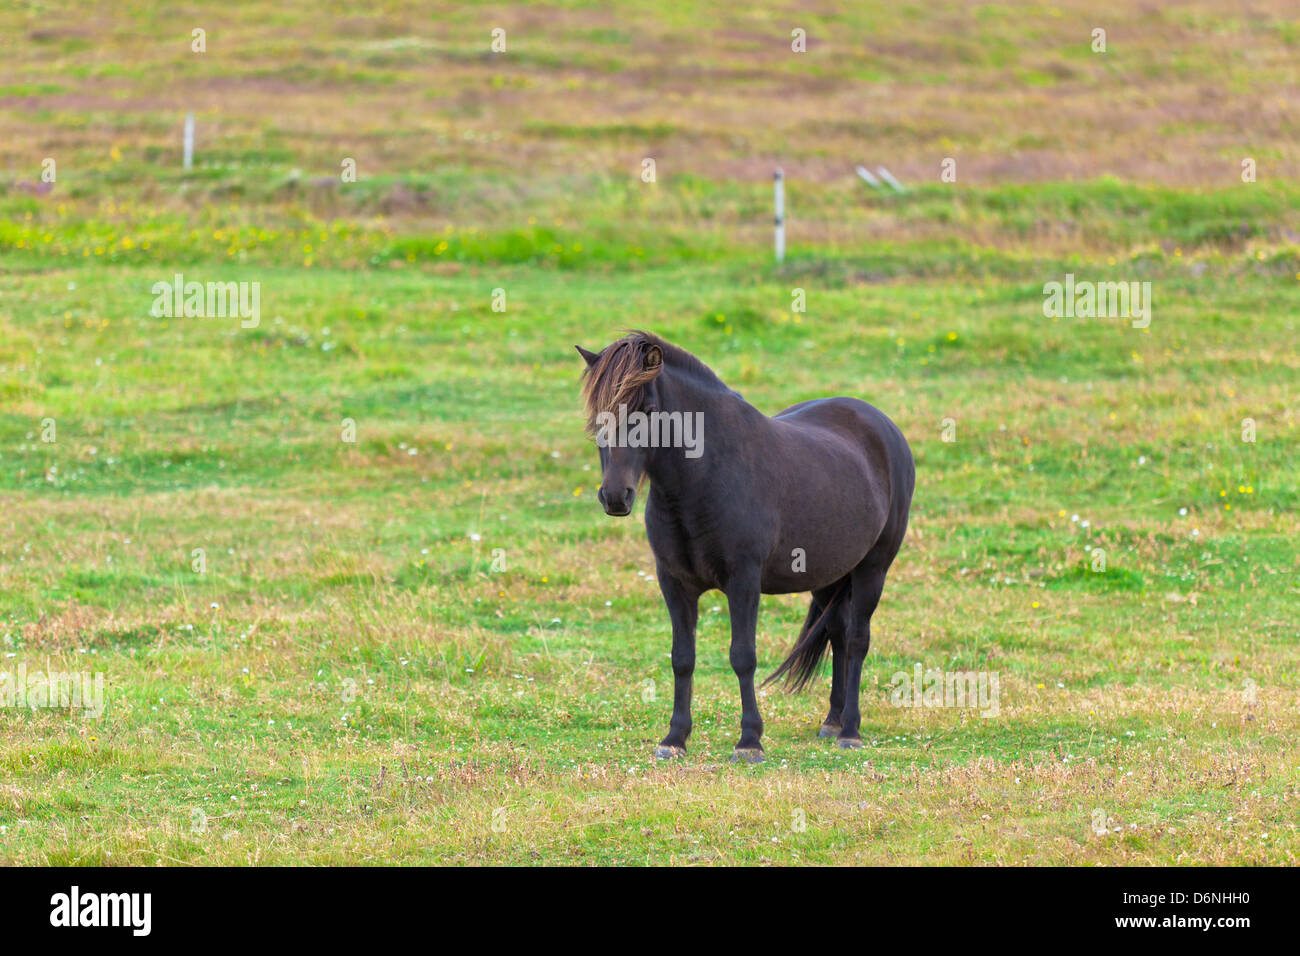 Cavallo nero in un campo Verde di erba. Inquadratura orizzontale Foto Stock